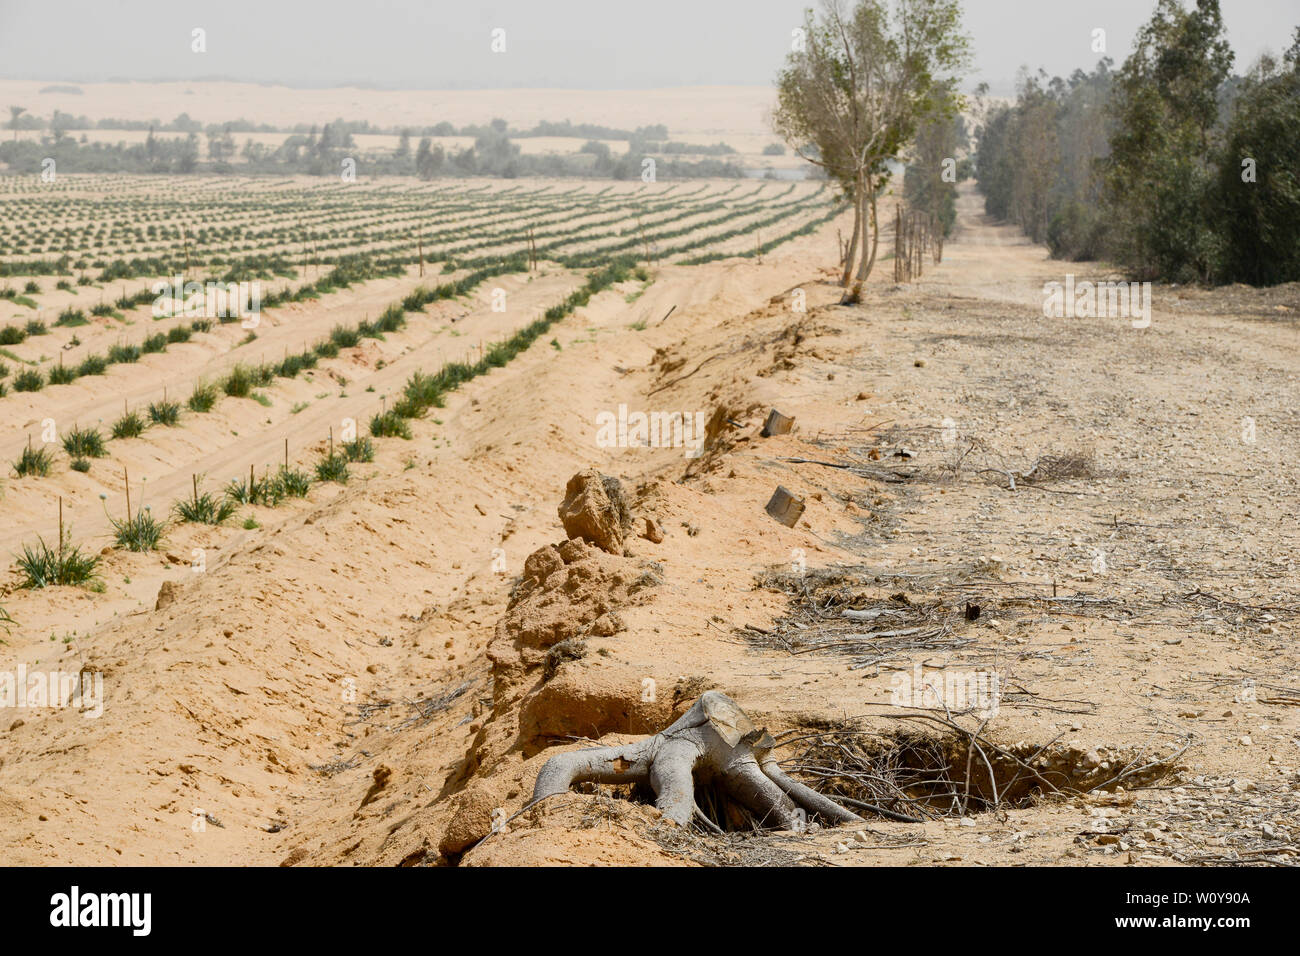 Ägypten, Sarapium Ismallia, Wald, in der Wüste, die Bäume sind bewässert durch behandeltes Abwasser Wasser aus Ismalia, links Wüste Bauernhof mit Zwiebeln, Erosionsschutz Stockfoto